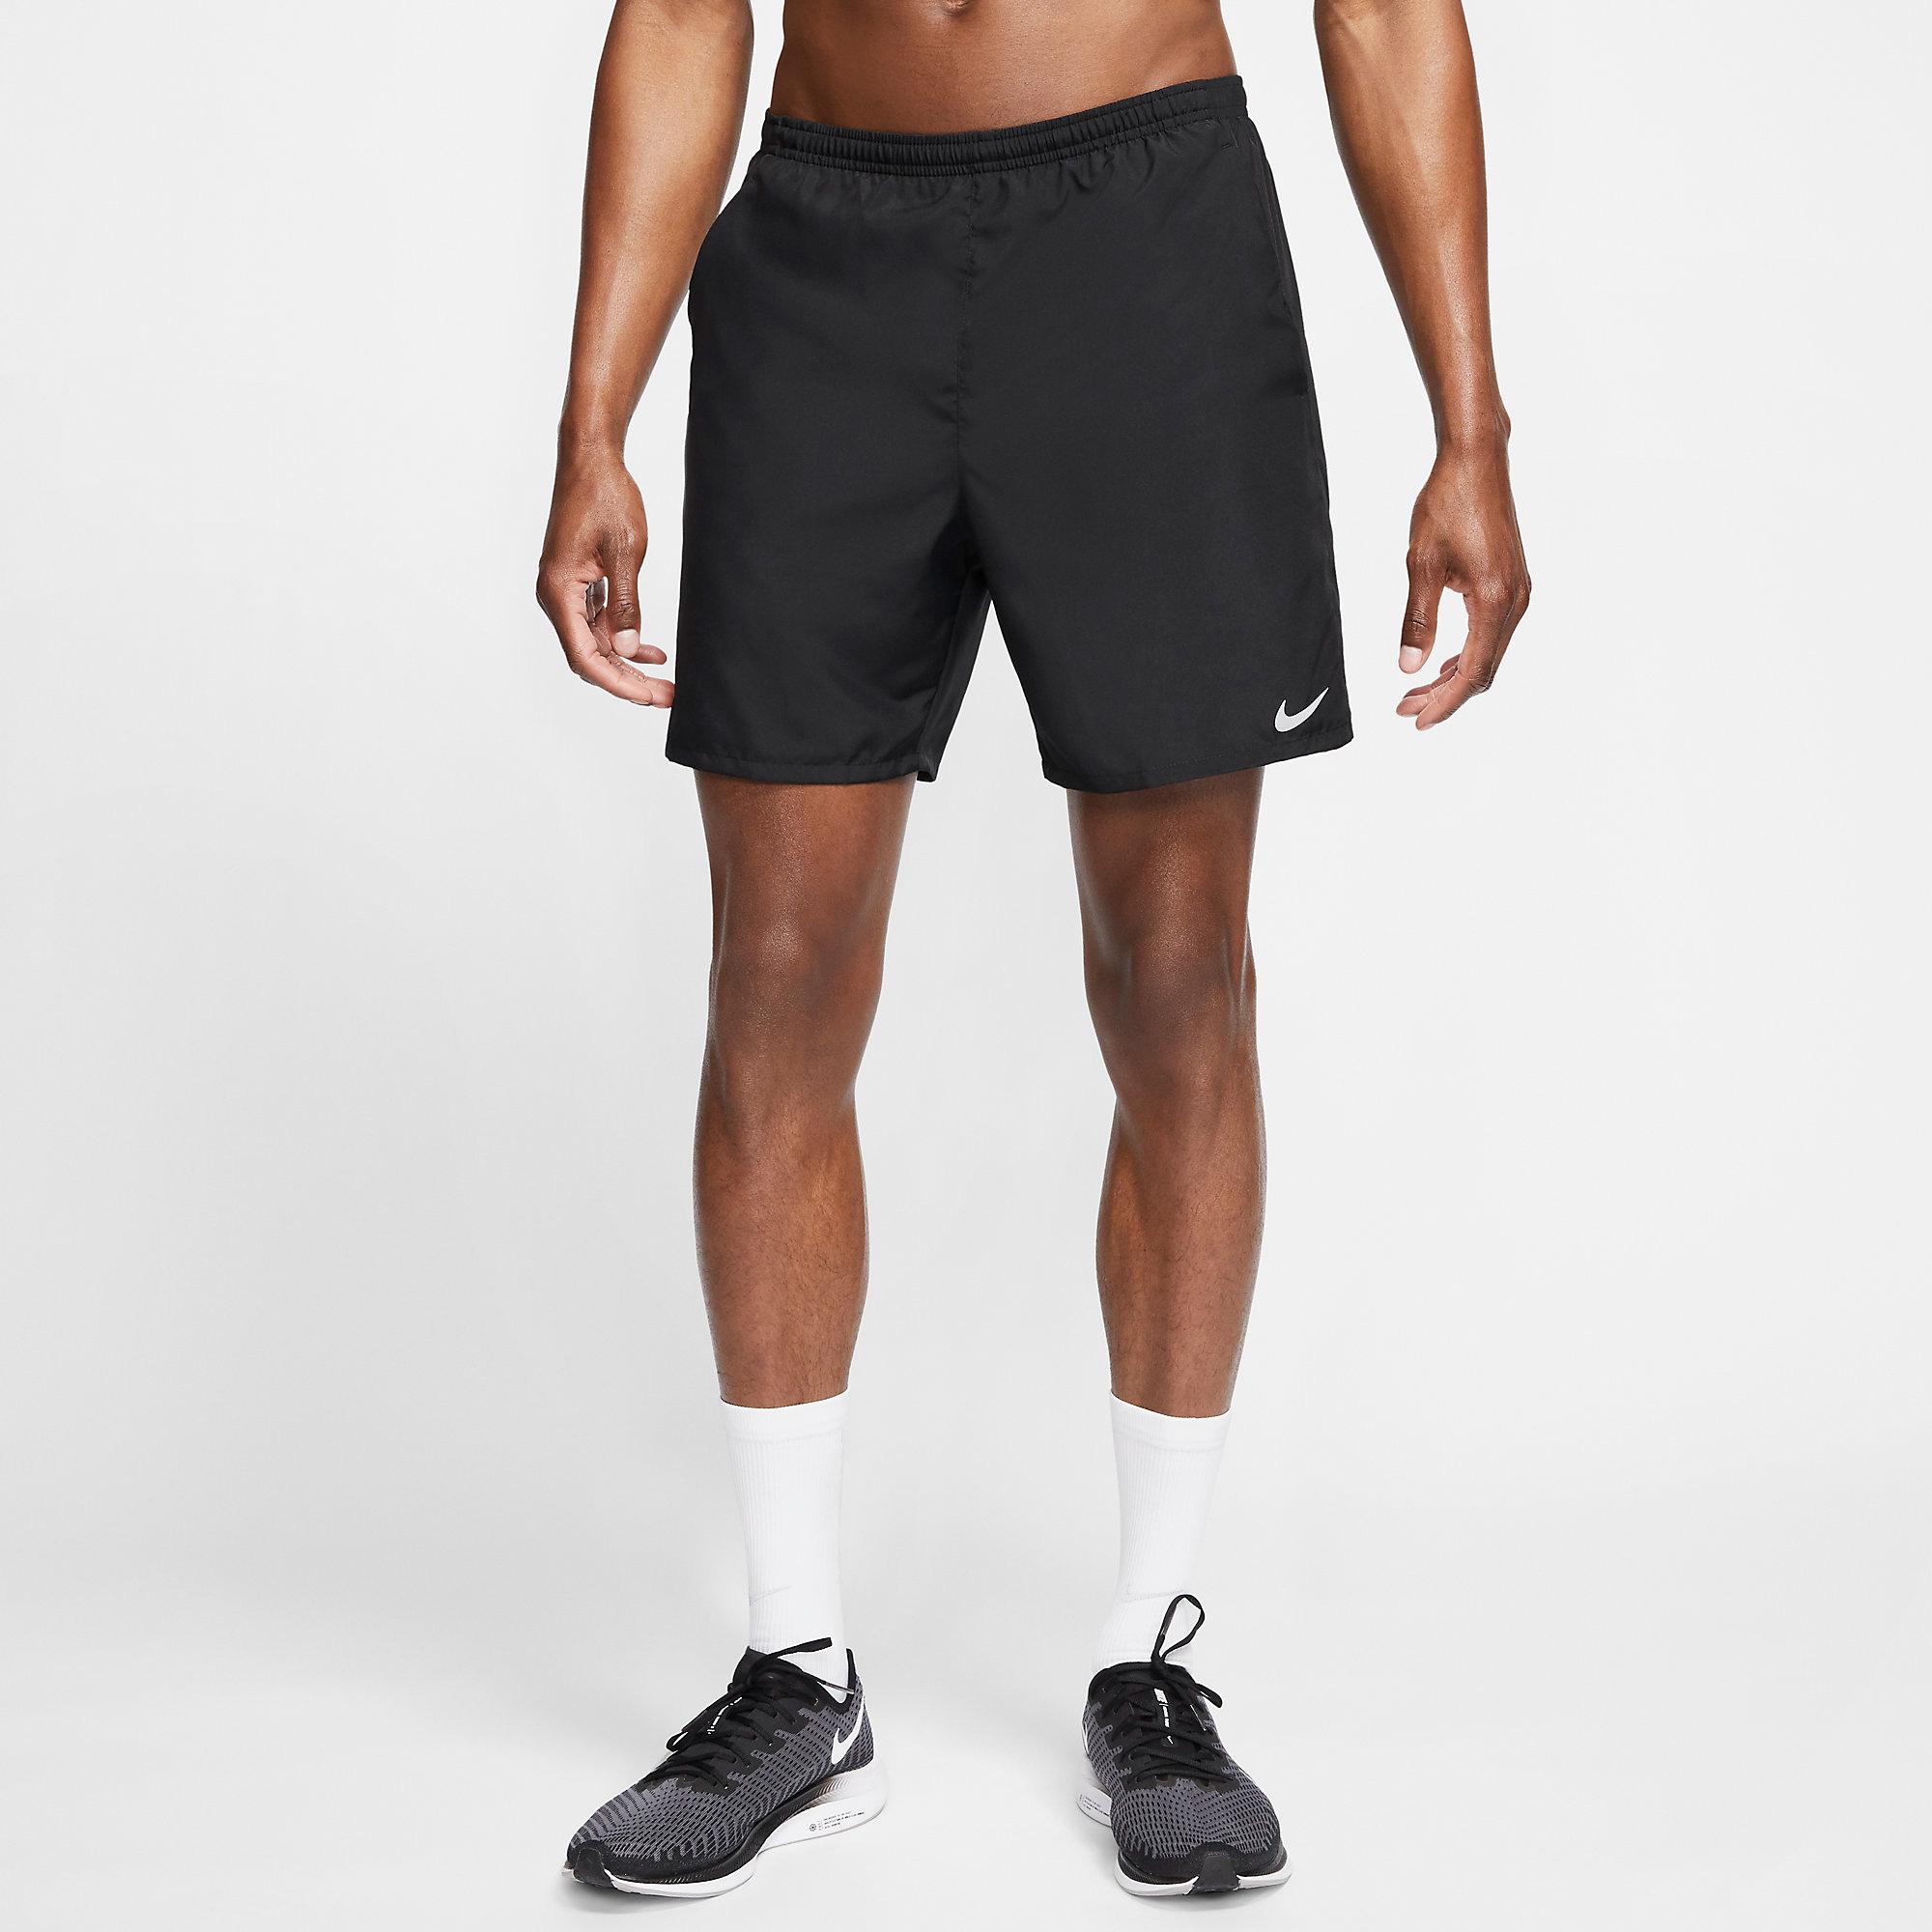 Nike Mens Dri-FIT 7 Inch Shorts - Iron Grey - Tennisnuts.com